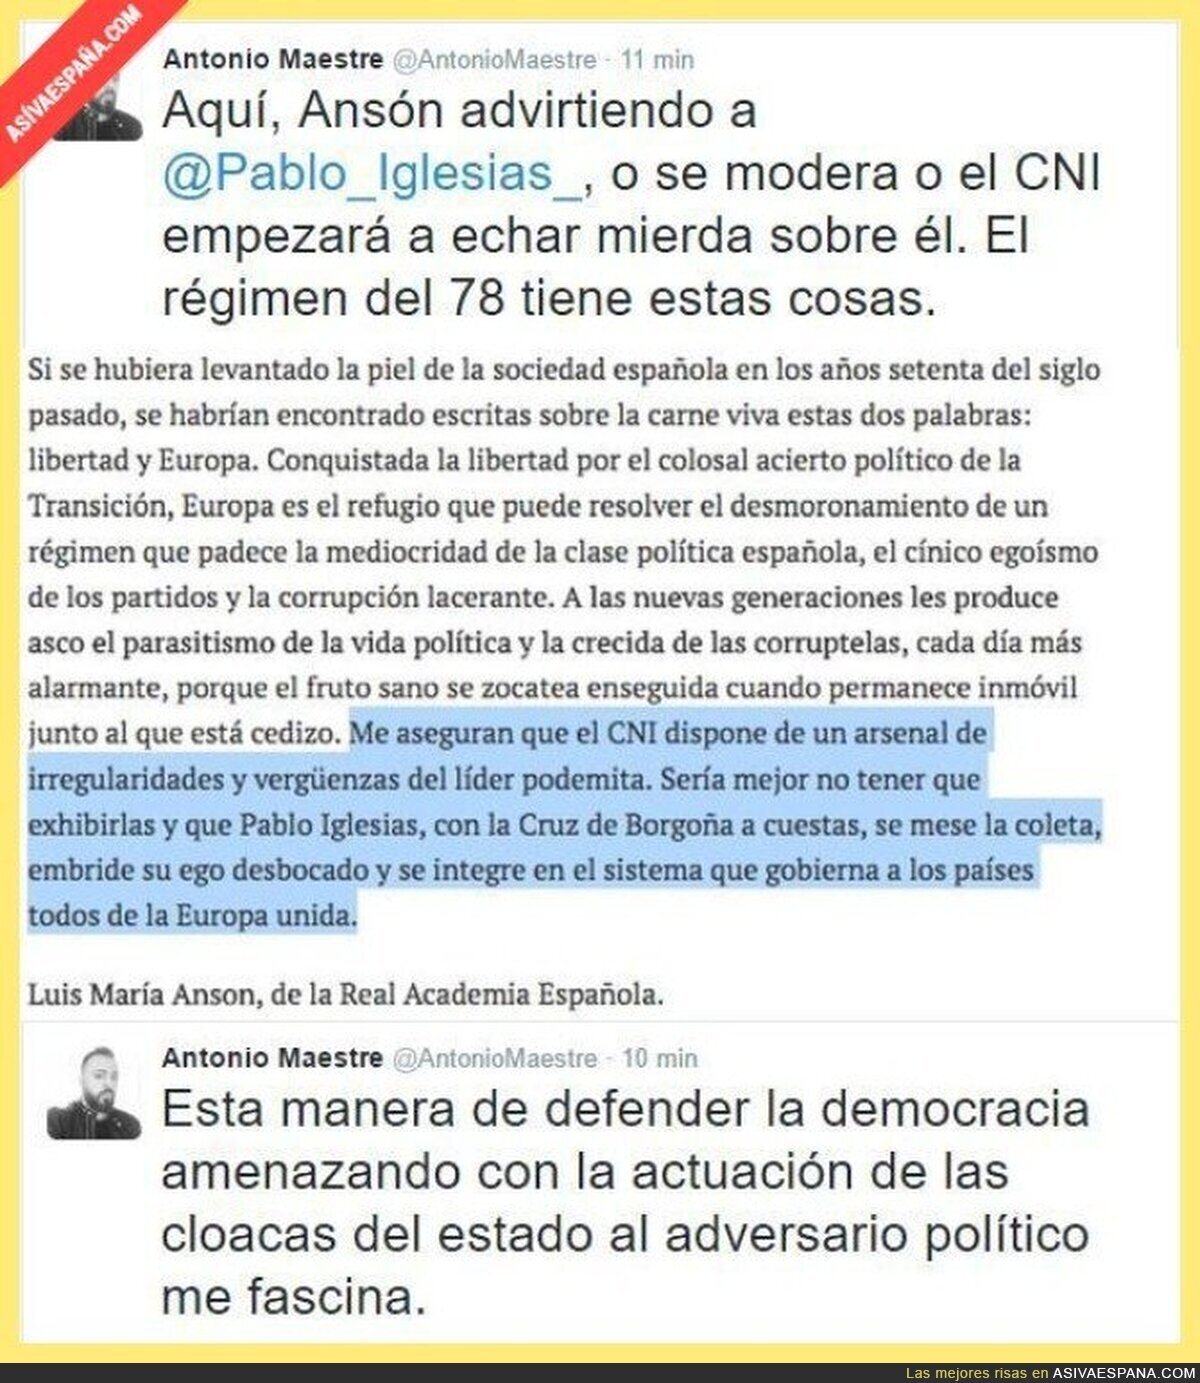 Amenazando con el CNI contra enemigos politicos. Periodismo en España